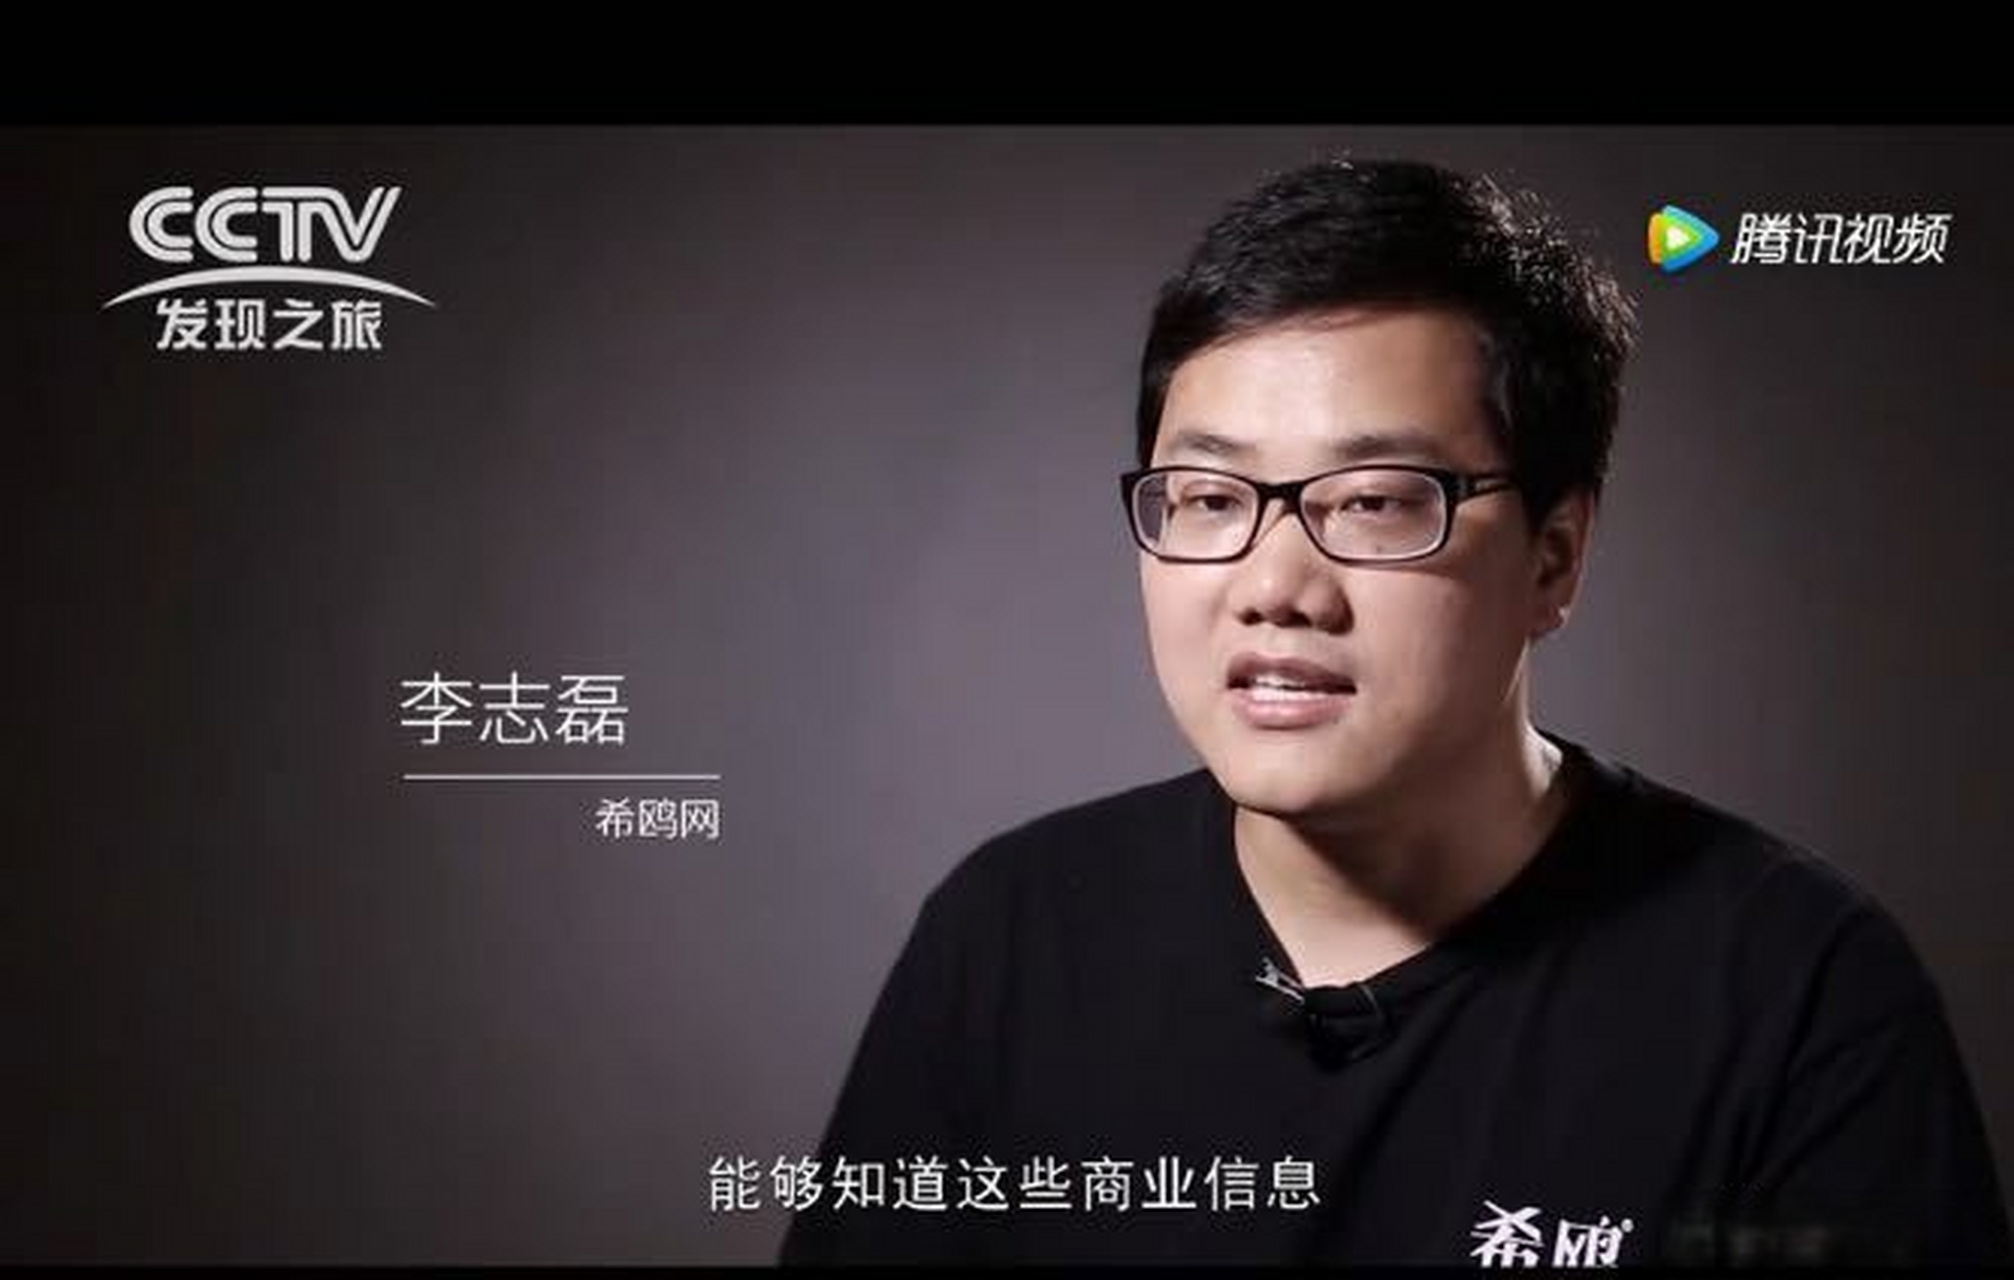 希鸥网创始人李志磊接受cctv发现之旅频道采访 